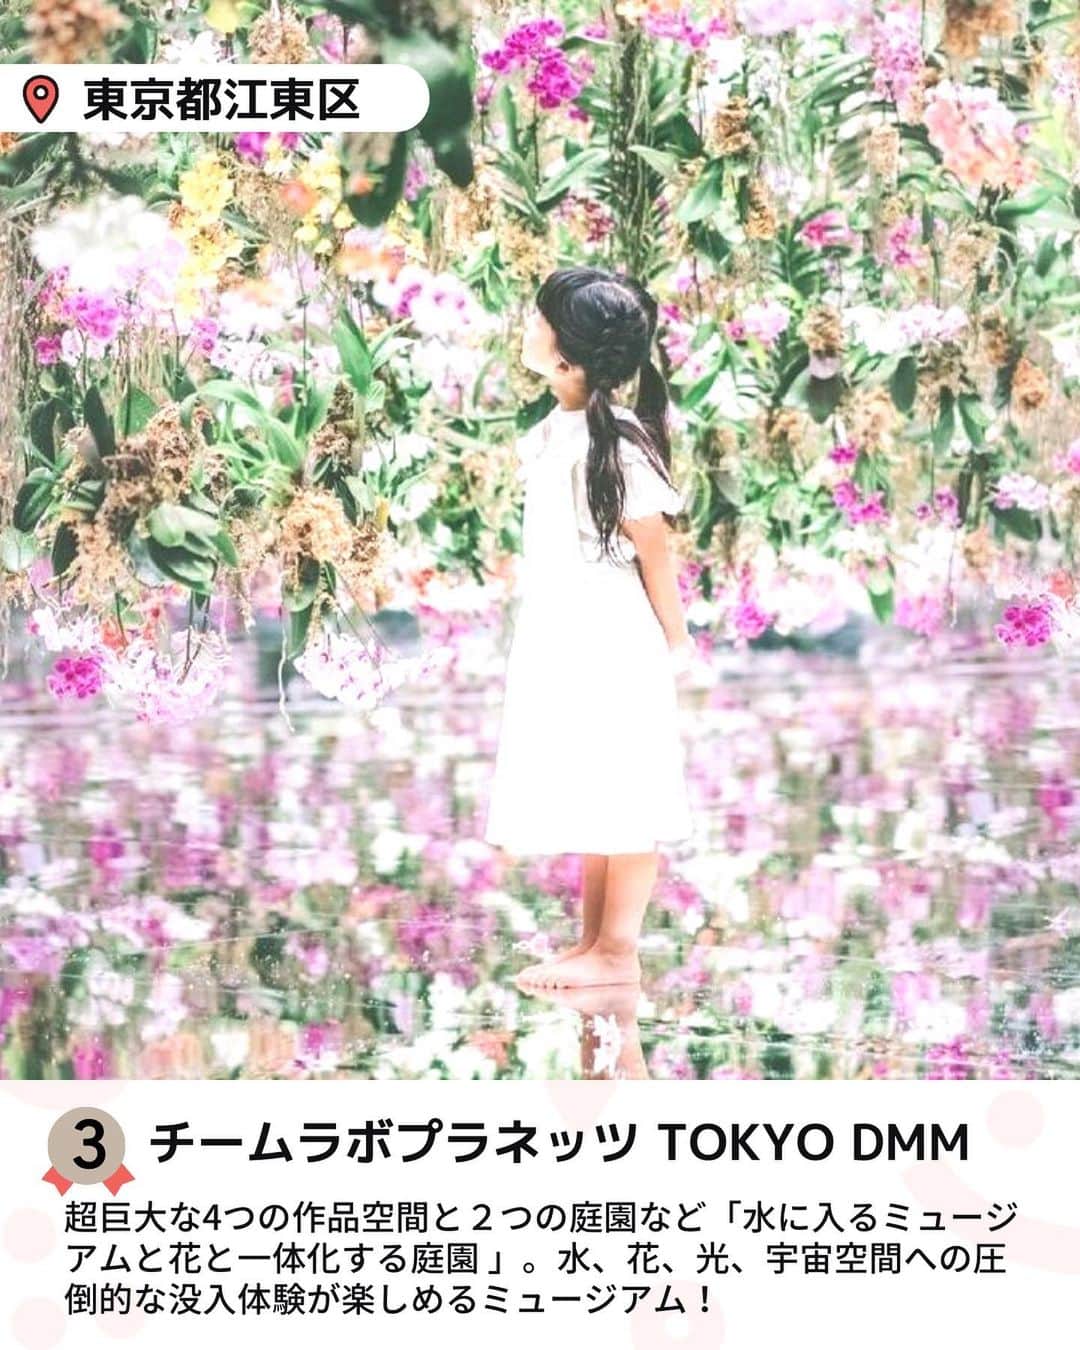 iko-yo（いこーよオフィシャル）さんのインスタグラム写真 - (iko-yo（いこーよオフィシャル）Instagram)「今回ピックアップしたのは「関東おでかけ月間人気ランキング」 ※2023年7月1日〜7月31日いこーよ集計 @ikoyo_odekakeに他の投稿も！ ーーーーーーーーーーーーーーーーーー 📍神奈川県横須賀市 8位【namcoトンデミ横須賀　コースカベイサイドストアーズ店】 @tondemiyokosuka  #トンデミ横須賀 テレビやYouTubeで話題！世界中から集めたたくさんのアスレチックやスポーツゲームが楽しめる都市型屋内アスレチック施設！国内初導入のアクティビティも！  📍埼玉県川口市 7位【ASOBooN】 @asobono_official  #asoboon  高速道路に直結！知育玩具で有名なボーネルンドプロデュースの関東最大級の屋内外の全天候型あそび場。場内には、大型遊具やボールプールをはじめ、ここにしかないジオラマや乗物コーナー、川口市の地場産業の鋳物で作ったオリジナル遊具で遊ぶことができます♪  📍埼玉県深谷市 6位【深谷グリーンパーク アクアパラダイス・パティオ】 #深谷グリーンパークアクアパラダイスパティオ  全天候型アミューズメントプールは、一年中いつでもプールが楽しめます！日焼けを気にせず思いっきり楽しめ、BBQやキャンプも楽しめるので泊りで楽しもう♪  📍神奈川県相模原市 5位【さがみ湖リゾート プレジャーフォレスト】 @sagamiko_resort  #さがみ湖リゾートプレジャーフォレスト  遊園地、温泉、BBQ施設、キャンプフィールドが揃うリゾート施設！ 緑豊かな遊園地エリアには、アスレチックや迷路、乗り物アトラクション、夏は水遊び広場など、ベビーから大人まで楽しめる遊びが勢ぞろい♪  📍千葉県山武市 4位【蓮沼ウォーターガーデン】 @hasunumakaihink  #蓮沼ウォーターガーデン  お子様を対象とした「トドラーキッズスペース」や巨大なバケツから勢いよく頭上に水が降り注ぐ「スーパースプラッシュ」、大人に手を引かれて滑るドキドキの山下りを体験できる「マウンテンストリーム」など様々なアトラクションプールが充実！全長182メートルの巨大ウォータースライダー「スプラッシュシェイカー」の大迫力満点で楽しい要素が盛りだくさん！  📍東京都江東区 3位【チームラボプラネッツ TOKYO DMM】 @teamlab.planets  #チームラボプラネッツ  水、花、光、宇宙空間への圧倒的な没入体験！ 親子で楽しめる超巨大なミュージアム。 ミュージアムは、総敷地面積10,000平米（テニスコート約38面分）の空間内に、超巨大な作品群で構成されています。  📍栃木県芳賀郡茂木町 2位【モビリティリゾートもてぎ】 @motegi_official  #もてぎ  森遊びやブランコを楽しみながら自然の中を散策できる「森のファミリーウォークTEKUTEKU」、親子で39箇所の木登り型アスレチックに挑戦できる「森感覚アスレチックDOKIDOKI」など家族で思いっきり体を動かして遊べるアクティビティがいっぱい！  📍千葉県野田市 1位【清水公園】 @shimizukouen  #清水公園  日本最大級100ポイントもある「フィールドアスレチック」をはじめ、キャンプ場やバーベキュー場、ポニー牧場などたくさんの楽しみ方ができる総合公園です。夏は巨大迷路もあり水遊びエリア「アクアベンチャー」が大人気！  ※2023年7月19日時点の情報です。 最新の情報は公式HPや「いこーよ」サイトでご確認ください。 ーーーーーーーーーーーーーーーーーーー おでかけ情報量は日本最大級！ 子どもとお出かけ情報サイト「いこーよ」 「親子でおでかけしたい場所」をご紹介させていただいています！ お子さんとのおでかけの思い出の写真を、このアカウントをフォローの上#いこーよ をつけてぜひ投稿してください。魅力的な写真は、いこーよ公式SNSで紹介させていただきます！ 募集中タグ#いこーよ　#いこーよおでかけ部 「子どもと行きたい！」と思ったら保存が便利！ プロフィールのURLから「いこーよ」のサイトに行くと、他の投稿やオトクな情報などが載っています♪ ☞ @ikoyo_odekake #いこーよ #お出かけ #おでかけ #お出かけスポット #子育て #こどものいる暮らし #子連れスポット #子連れおでかけ#いこーよお出かけ部 #関東おでかけ #水遊び #巨大迷路 #アスレチック #プール #屋内あそび場 #室内あそび場」8月24日 20時53分 - ikoyo_odekake